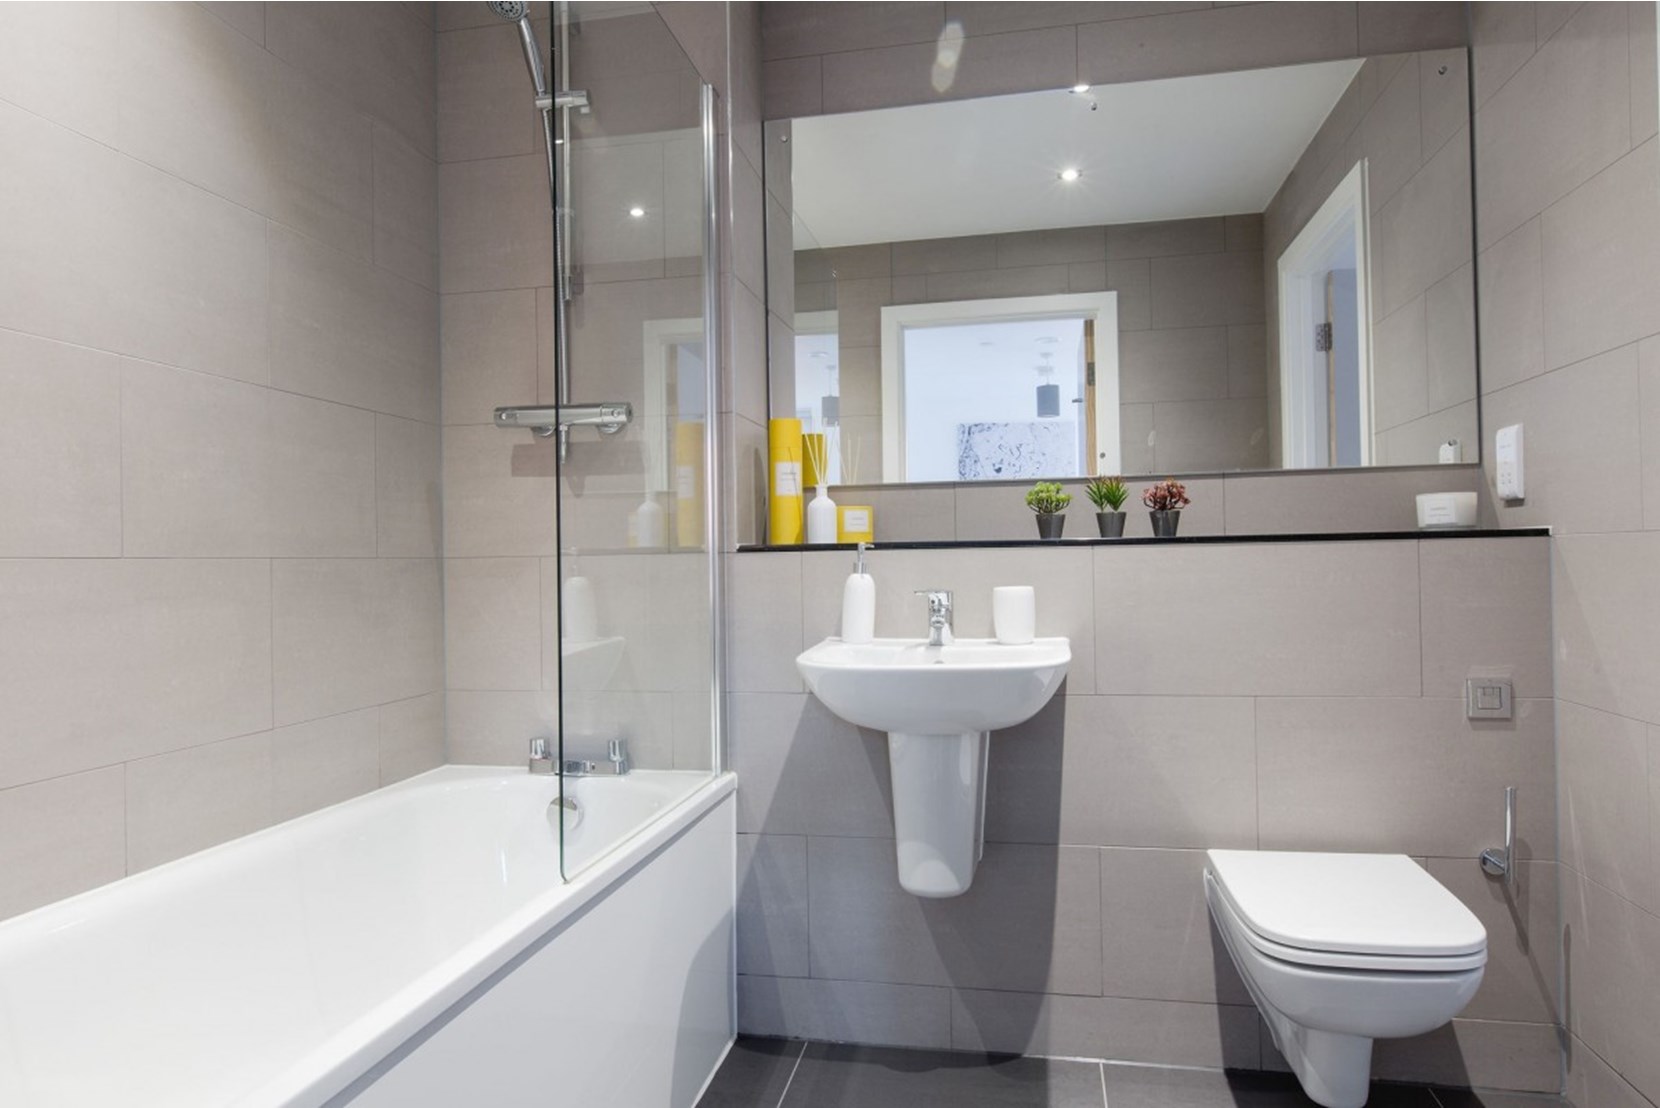 Apartment-Allsop-Vox-Manchester-interior-bathroom